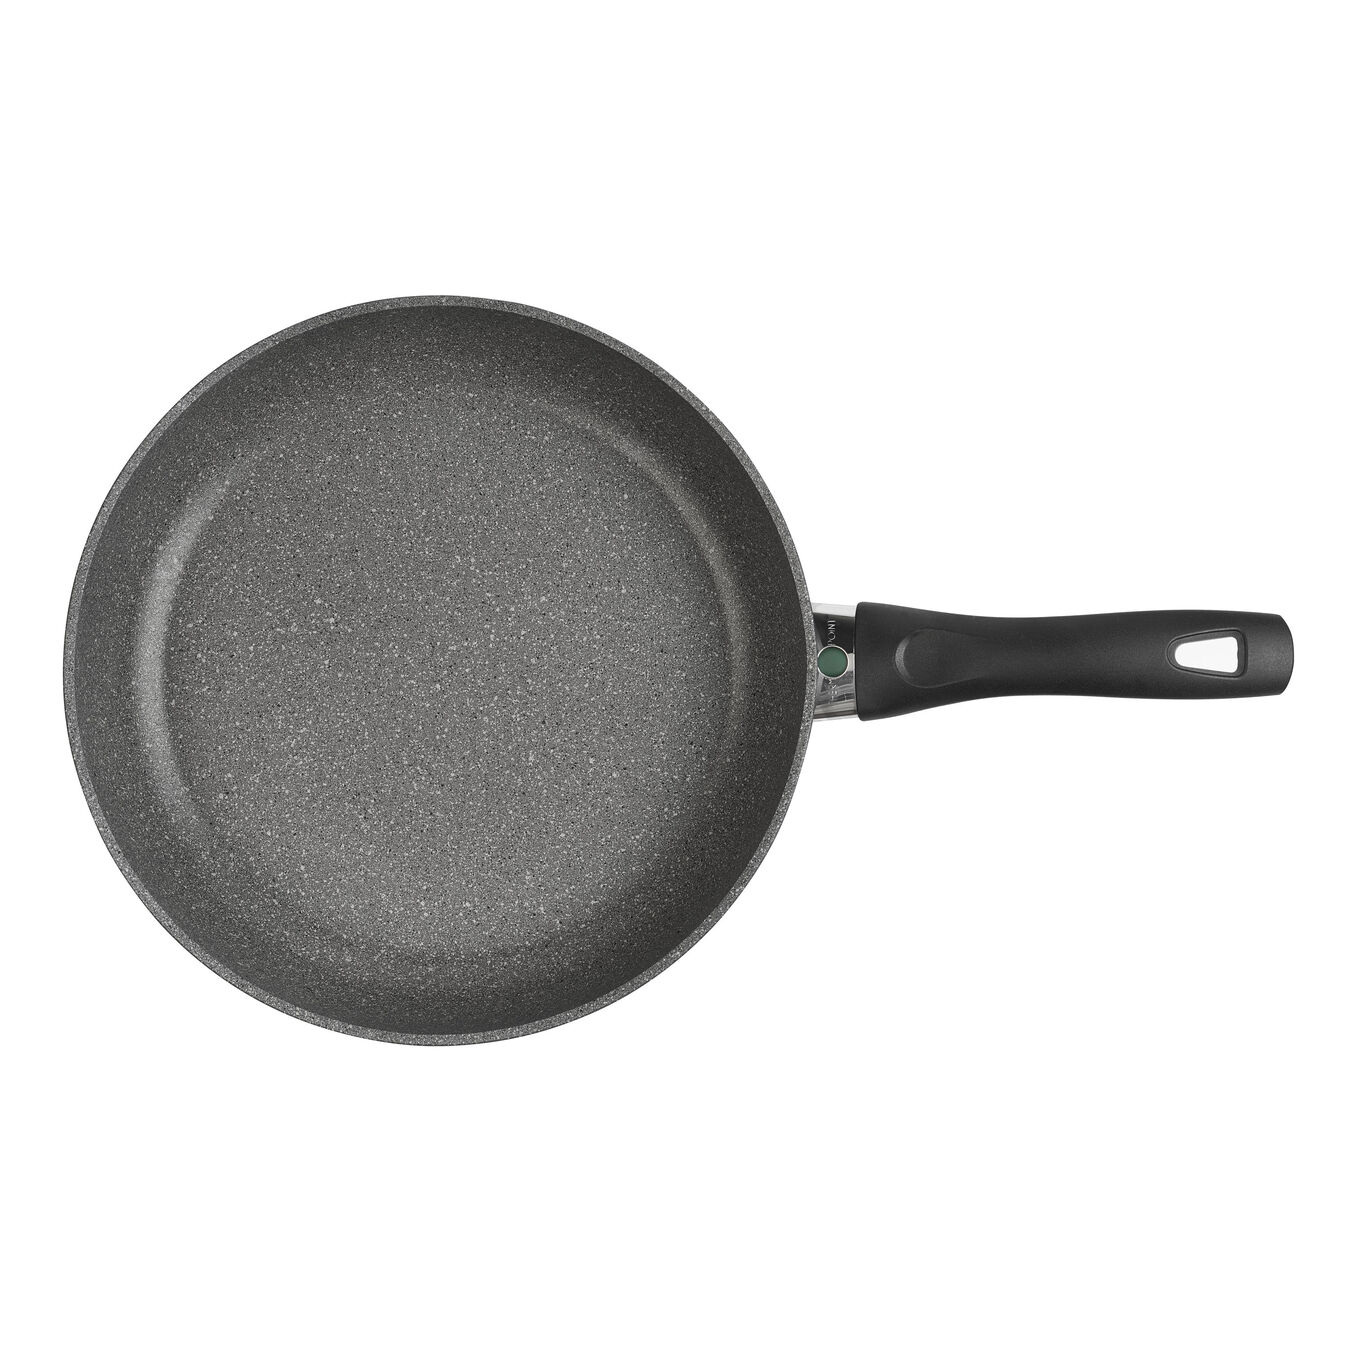  Granitium round 32cm/12.5in frypan pan, grey,,large 2